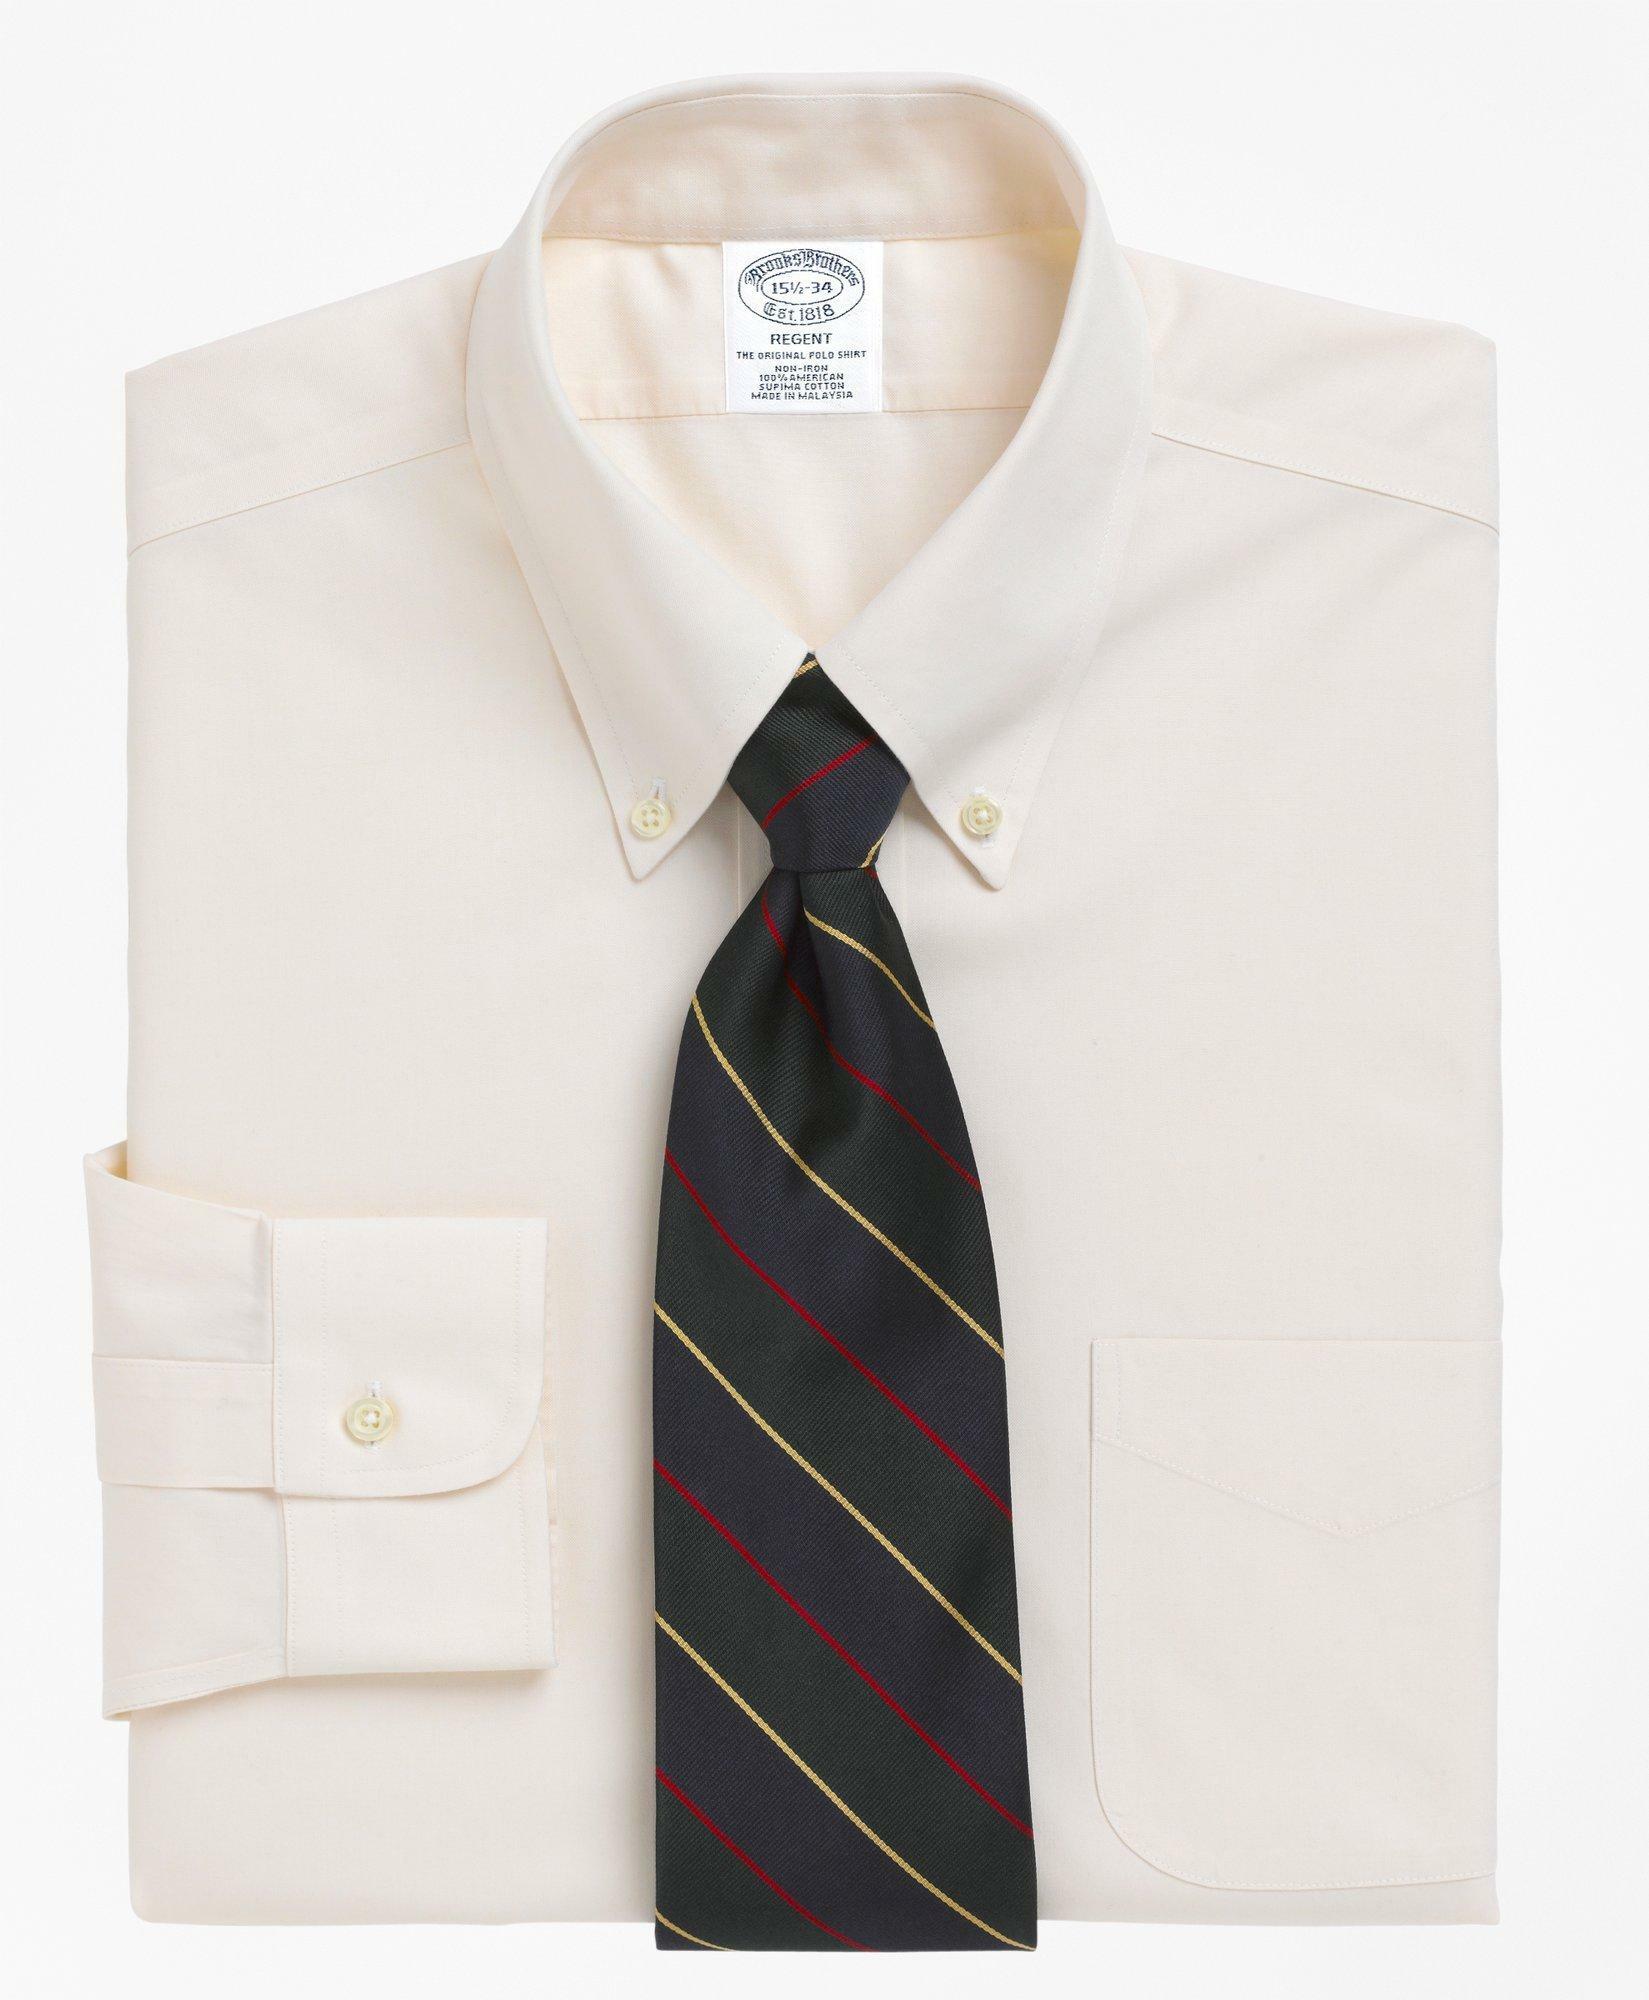 Brooks Brothers Men's Regent Regular-Fit Dress Shirt, Non-Iron Button-Down Collar | Ecru